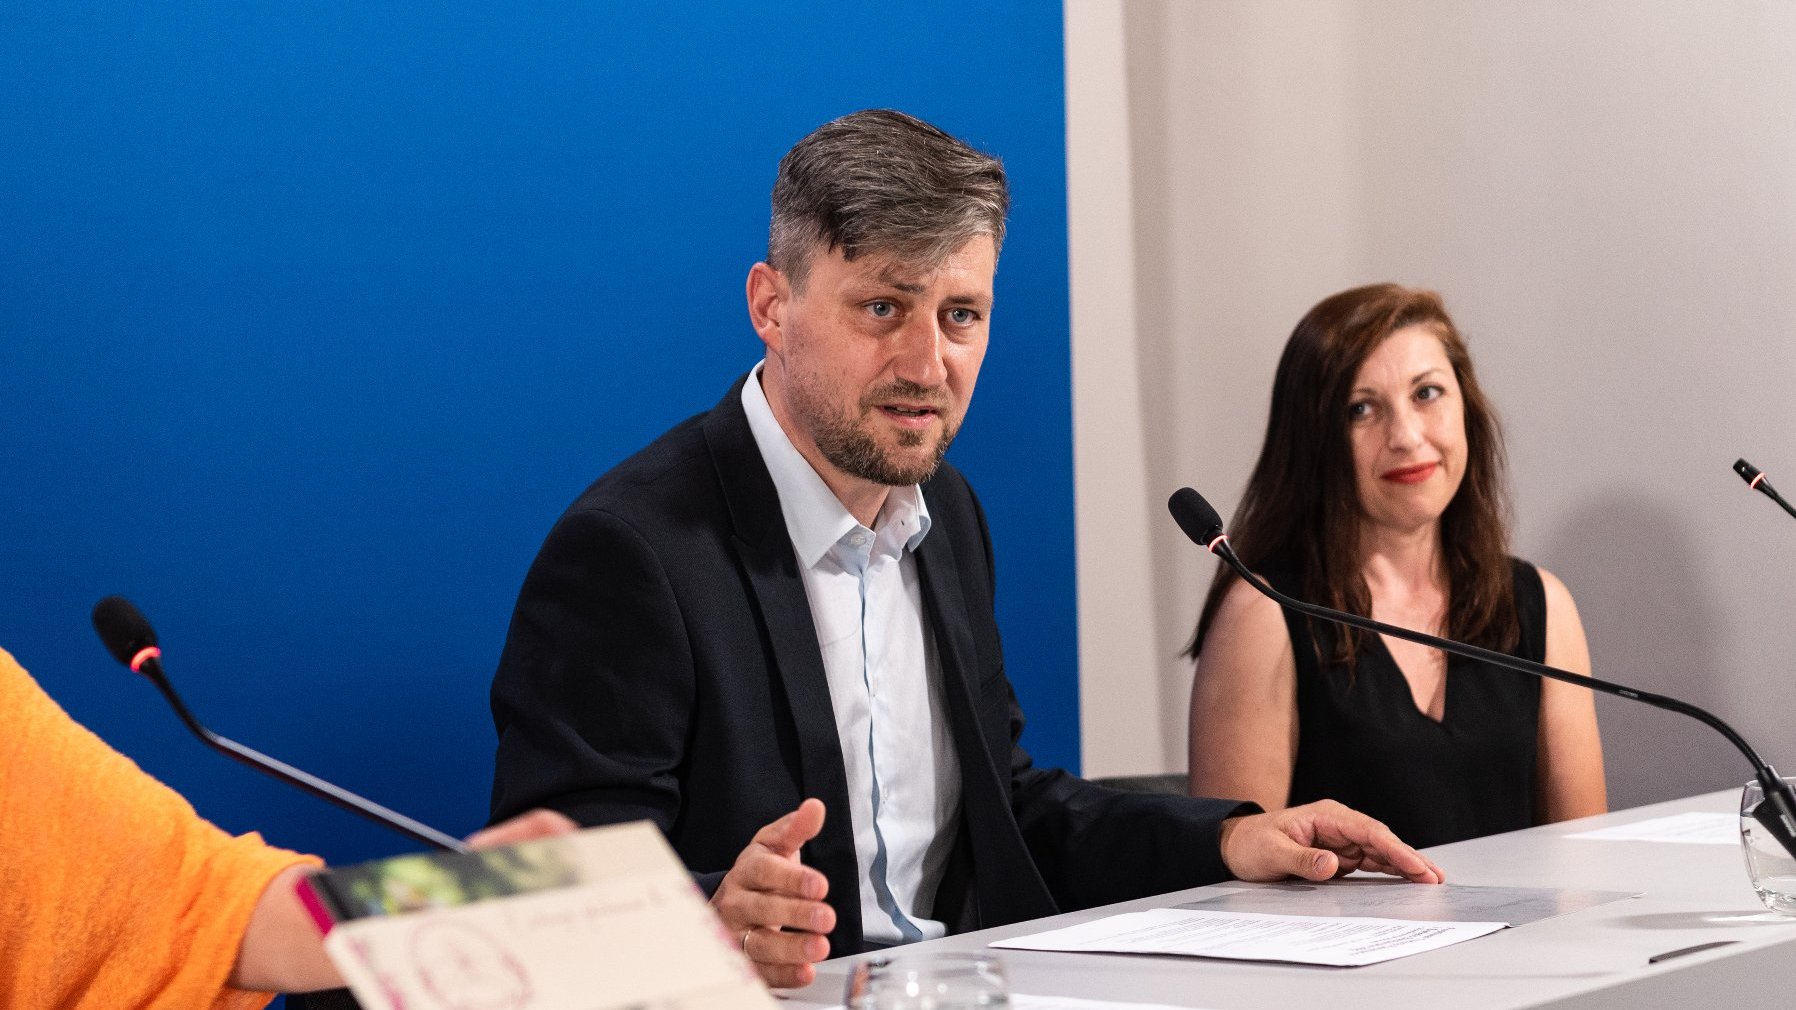 Na zdjęciu dwie osoby - mężczyzna i kobieta - za stołem konferencyjnym, przy mikrofonach